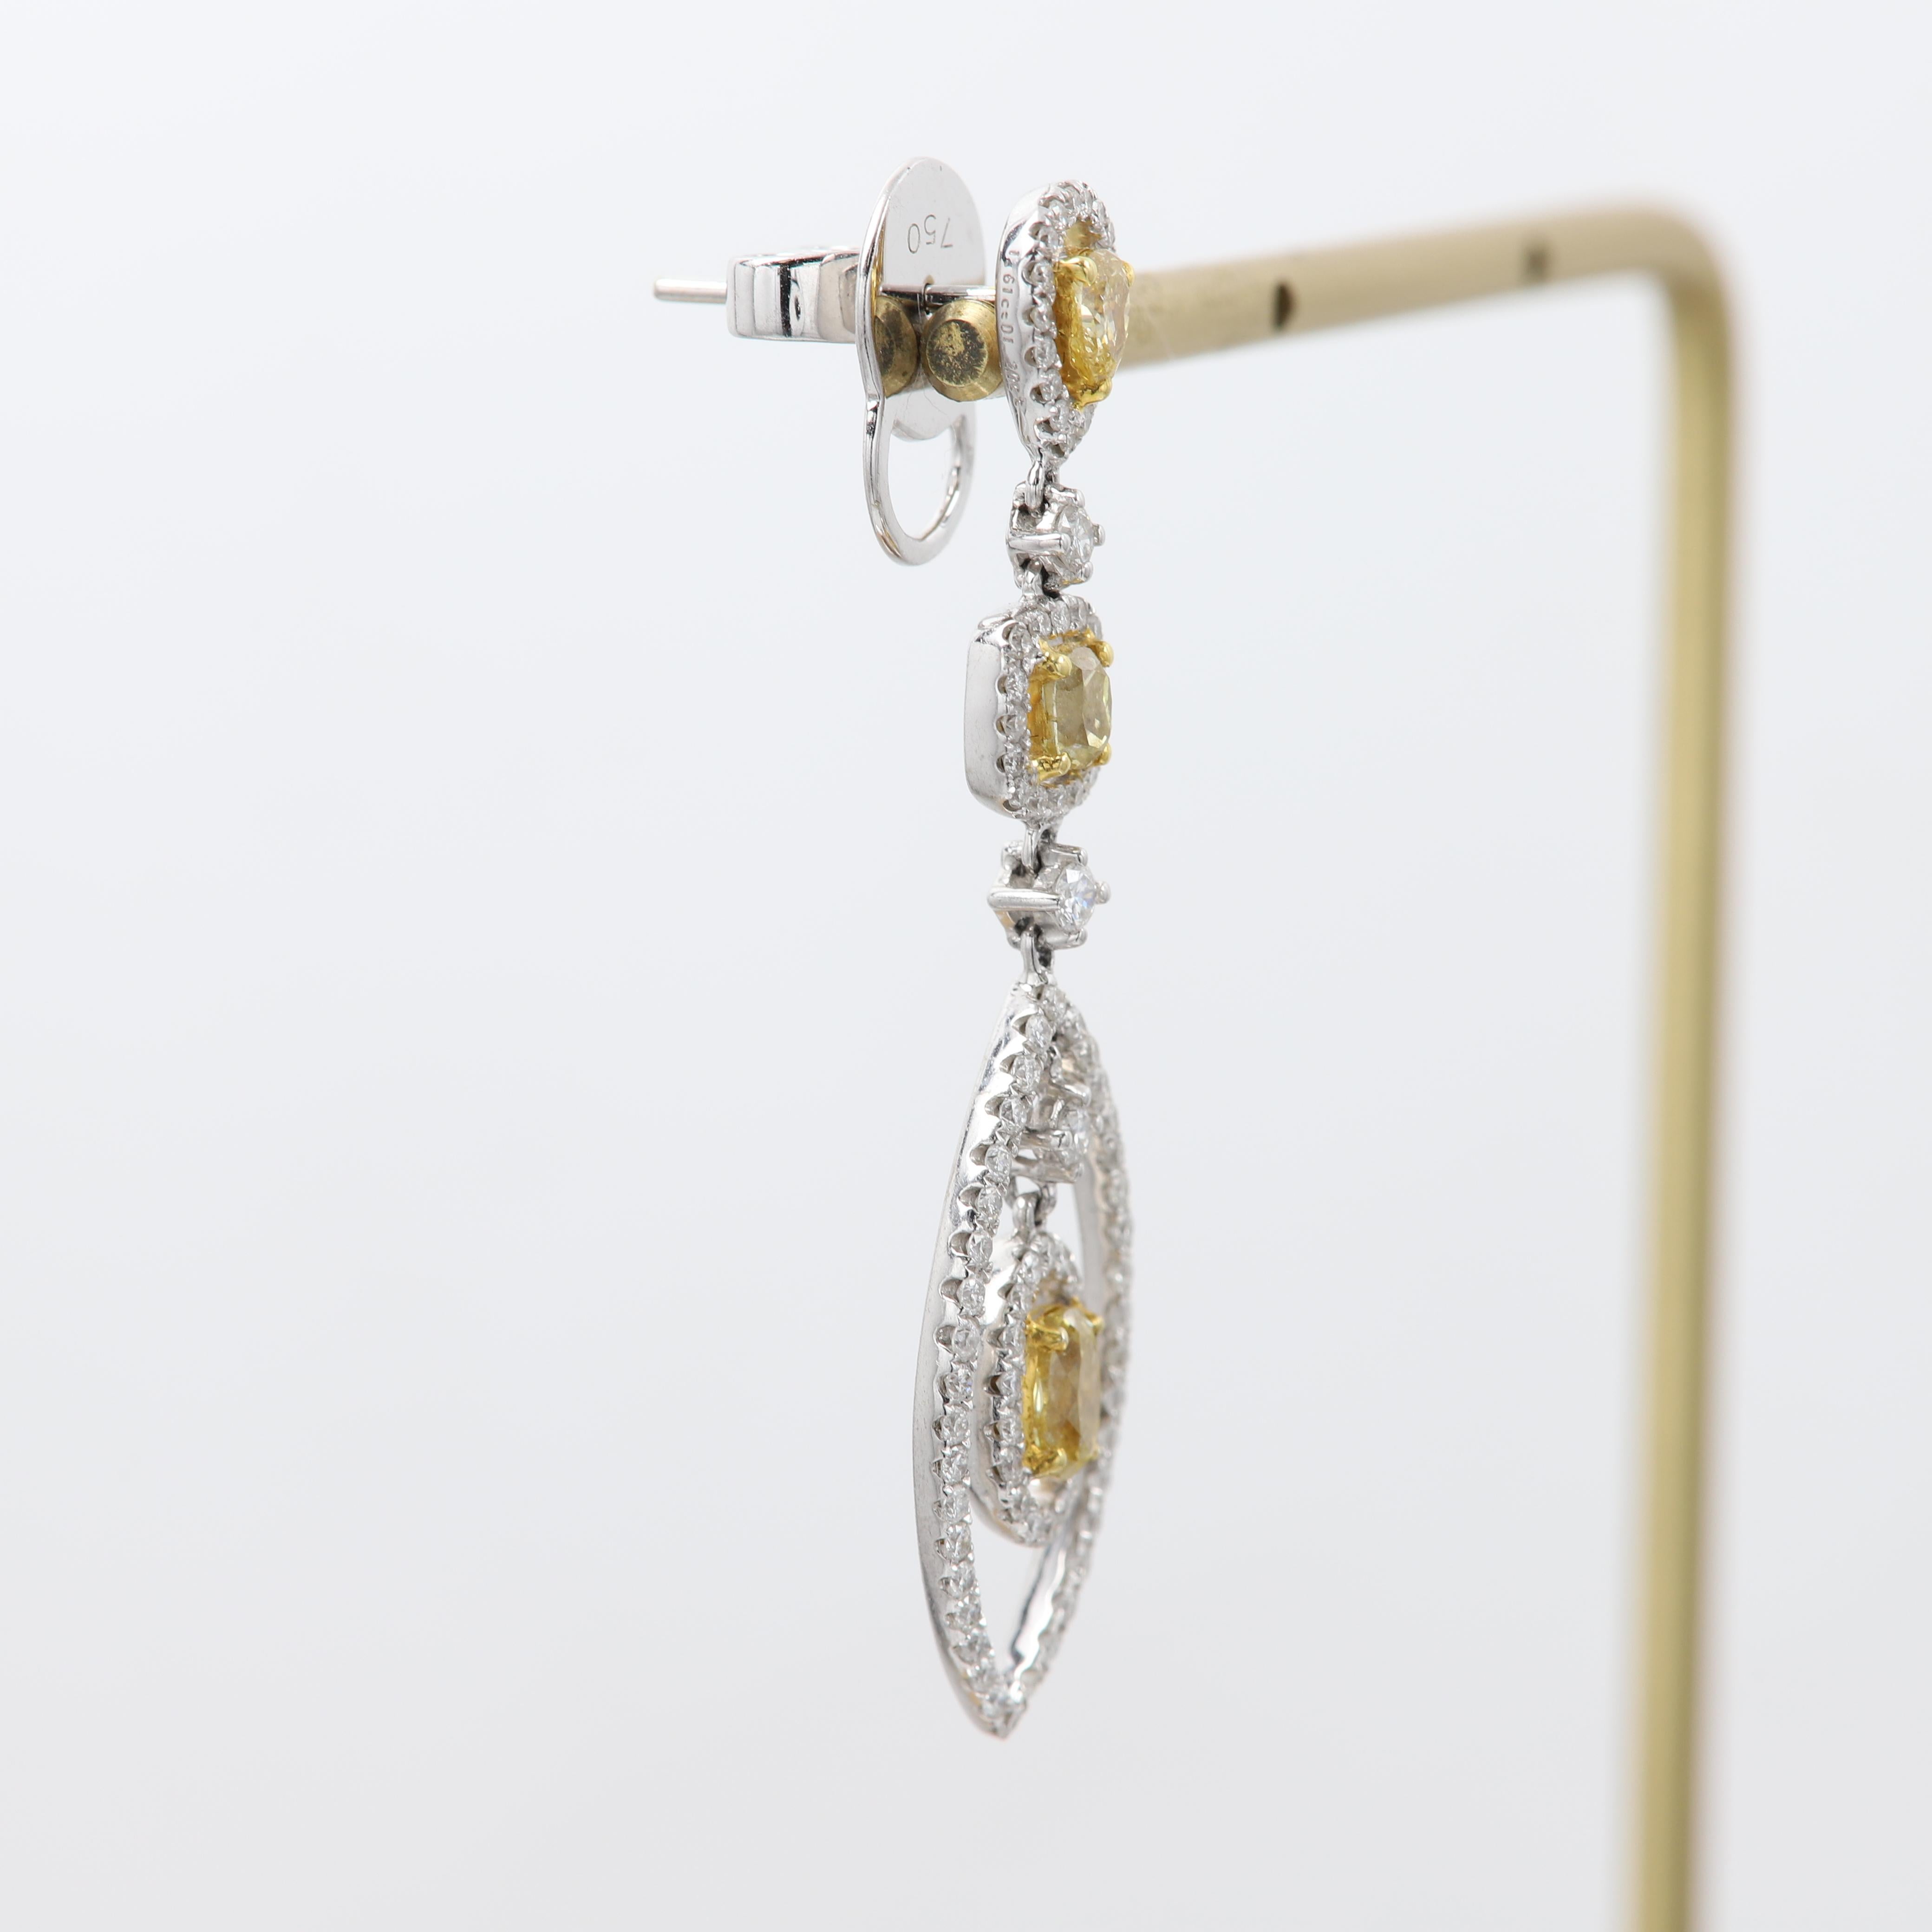 Boucles d'oreilles élégantes en forme de chandelier
Diamants Brilliante pendants.

Diamants naturels de couleur jaune clair et blanc
Or blanc 18k Poids total  8,8 grammes

Total des diamants blancs 1,20 carat. 
Total des diamants jaunes clairs 1,61